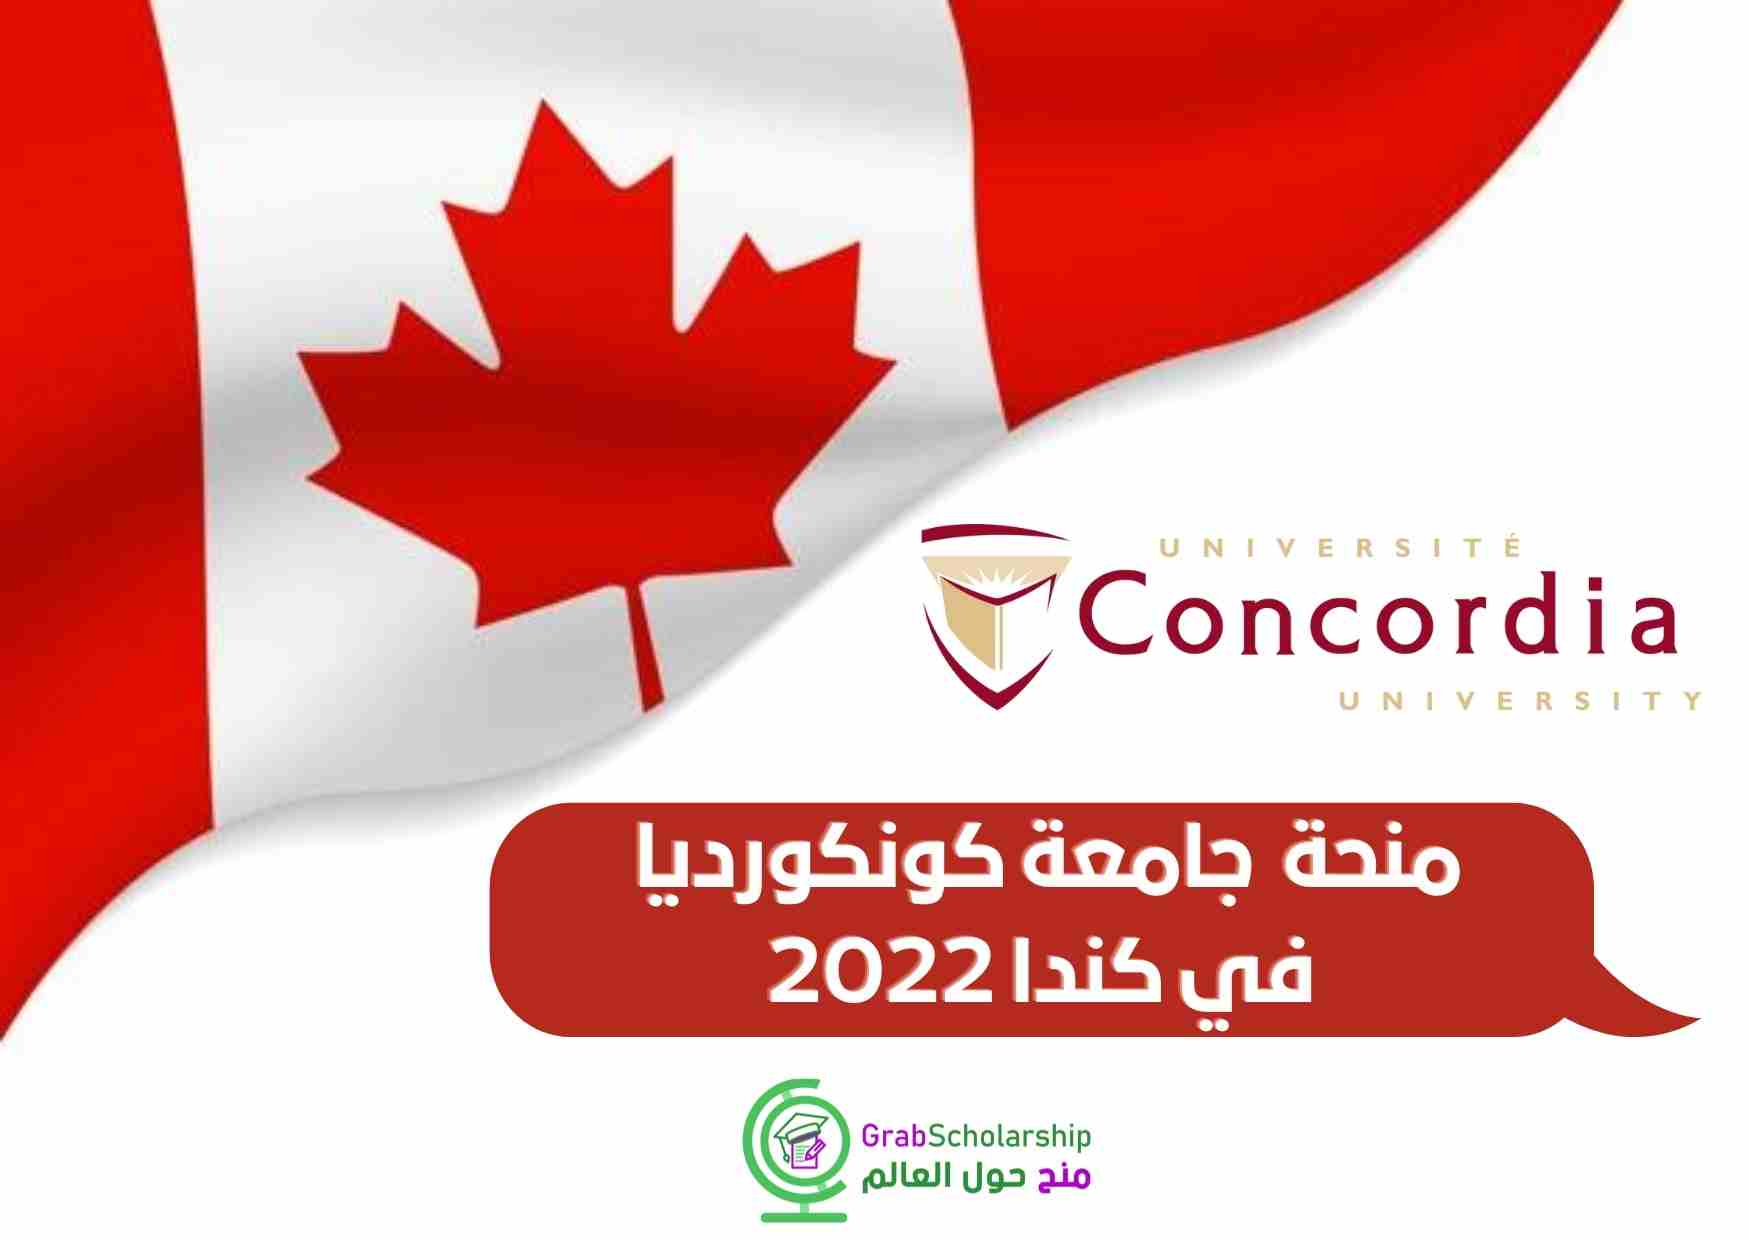 You are currently viewing منحة دراسية في جامعة كونكورديا في كندا 2022 | ممولة بالكامل